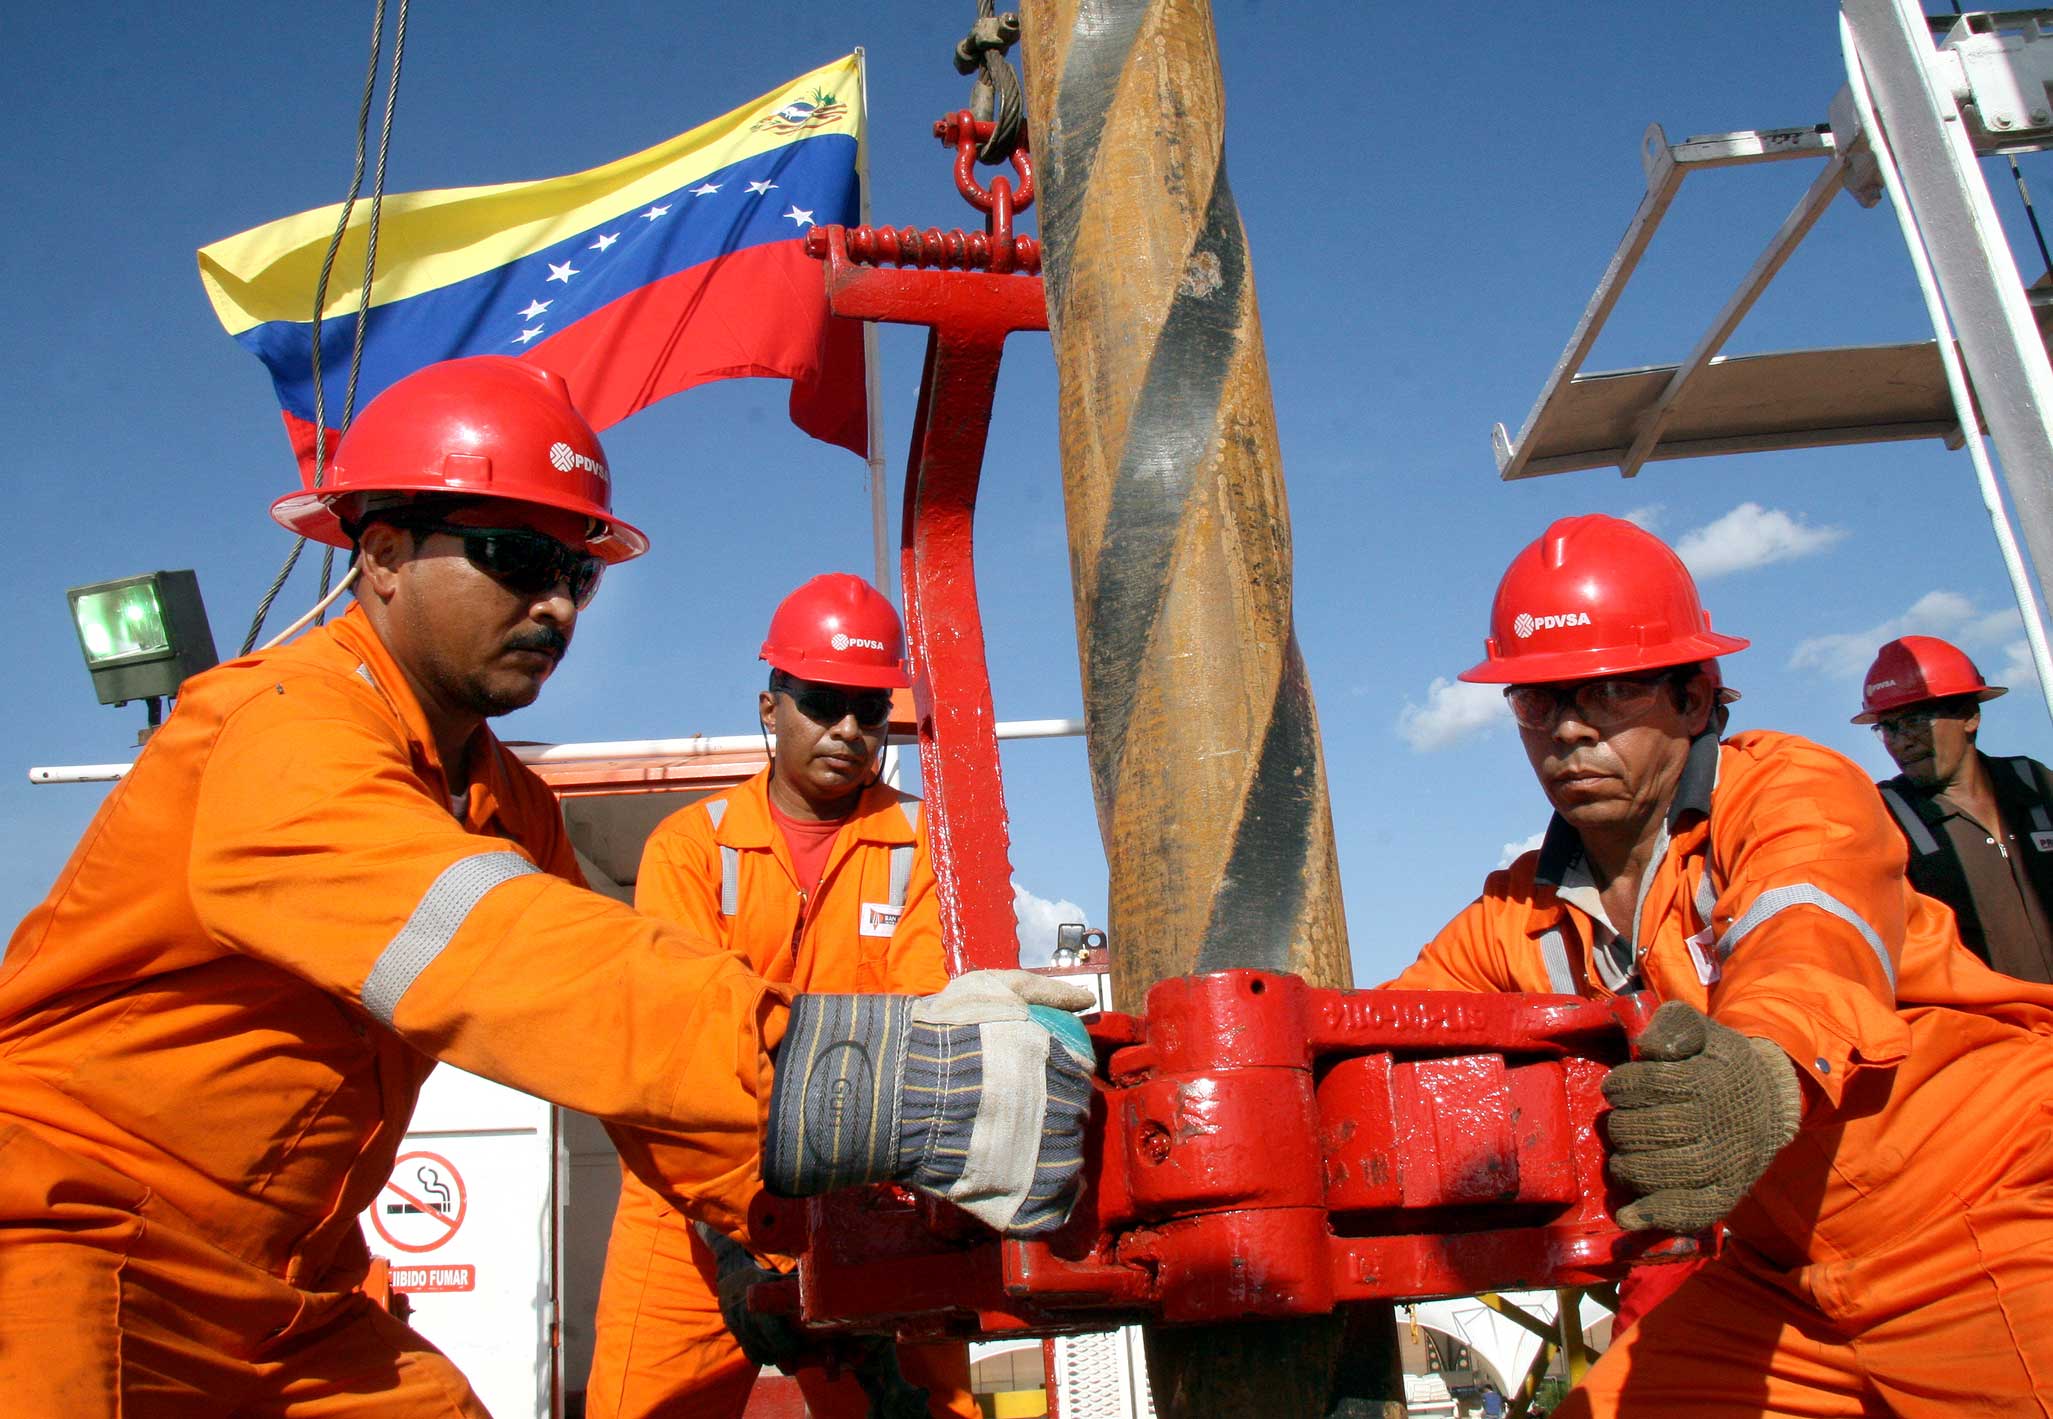 Recuperação da indústria petrolífera na Venezuela é improvável no curto prazo, afirmam especialistas do O&G. Na imagem: Funcionários da PDVSA, petroleira estatal da Venezuela, operam equipamento de perfuração; uniformizados, em laranja, com equipamentos e sinalizações de segurança e capacete vermelho (Foto: Divulgação)